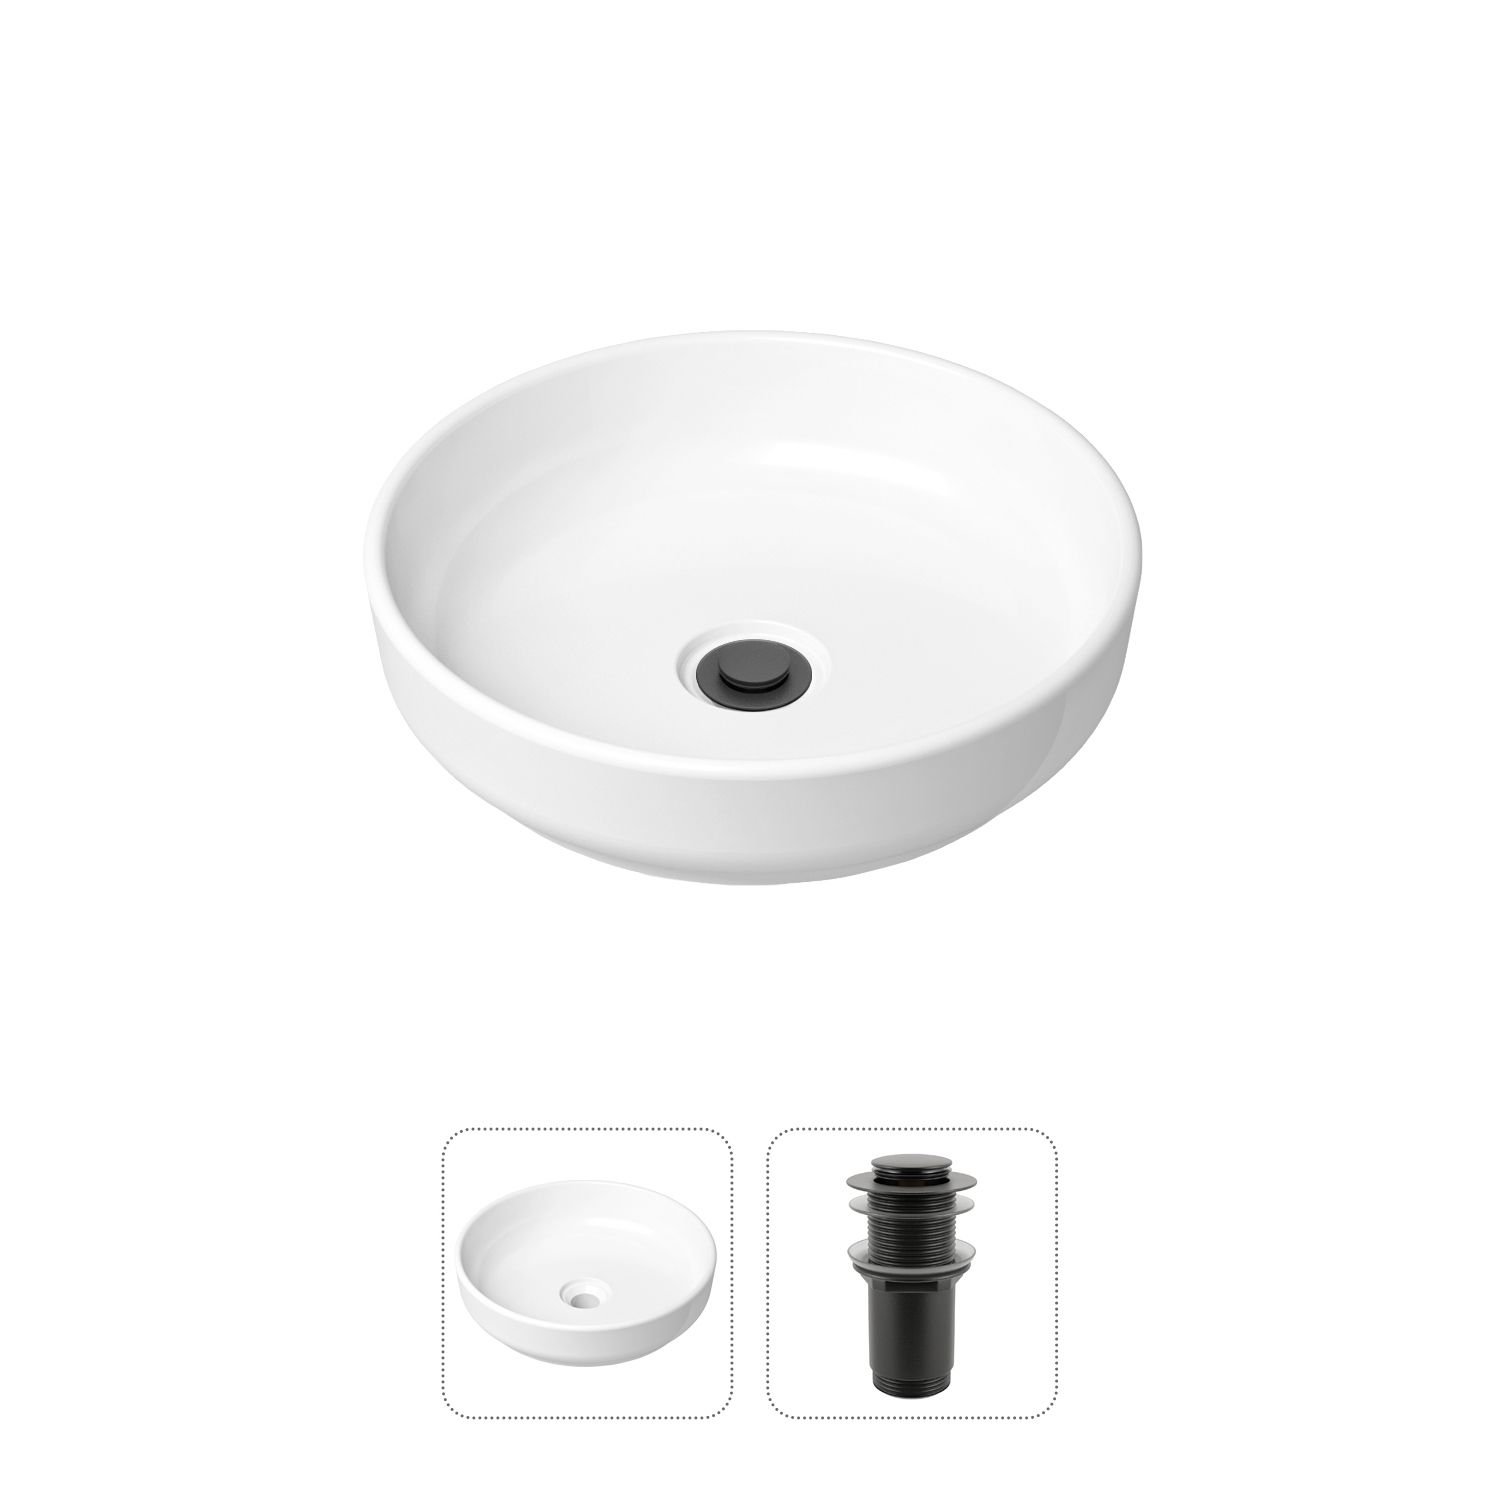 фото Комплект 2 в 1 lavinia boho bathroom sink slim 21520820: накладная раковина, донный клапан